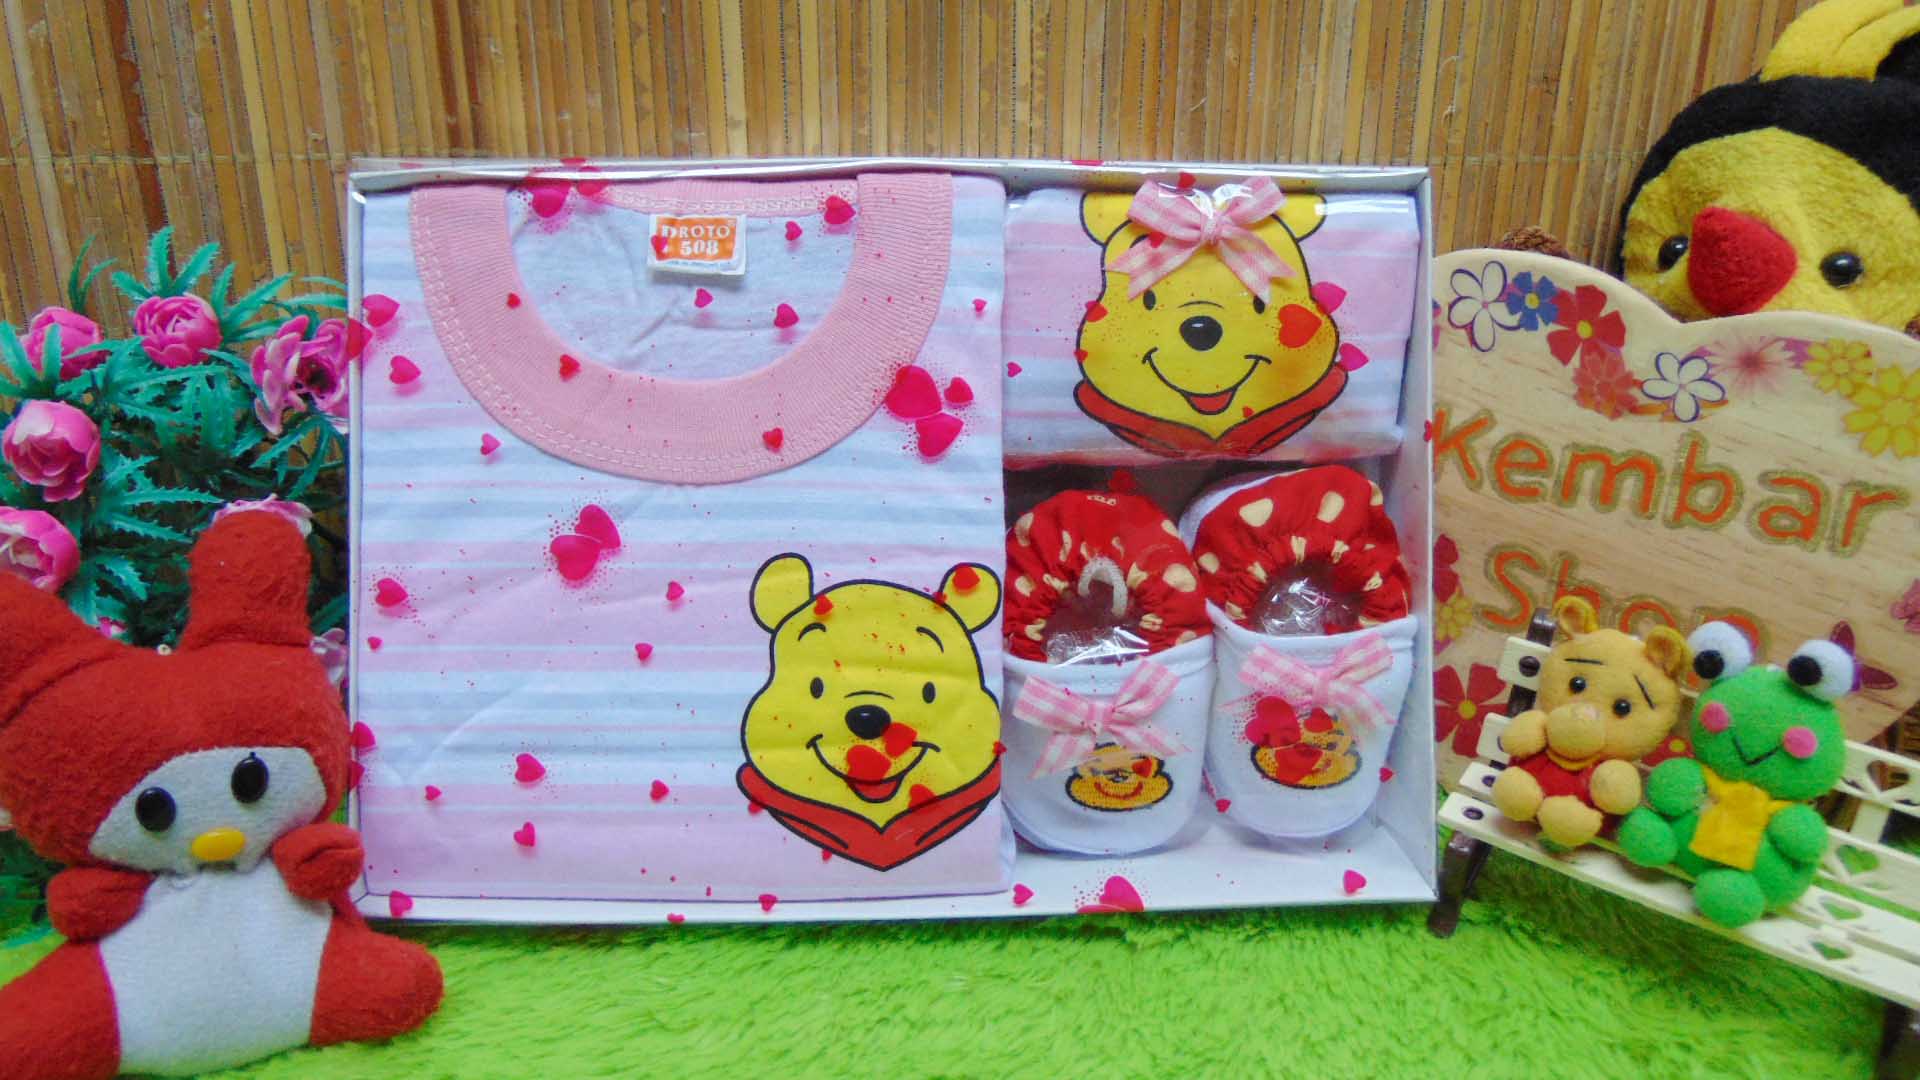 FREE KARTU UCAPAN kado bayi lahiran baby gift hadiah box paket karakter winnie the pooh pink